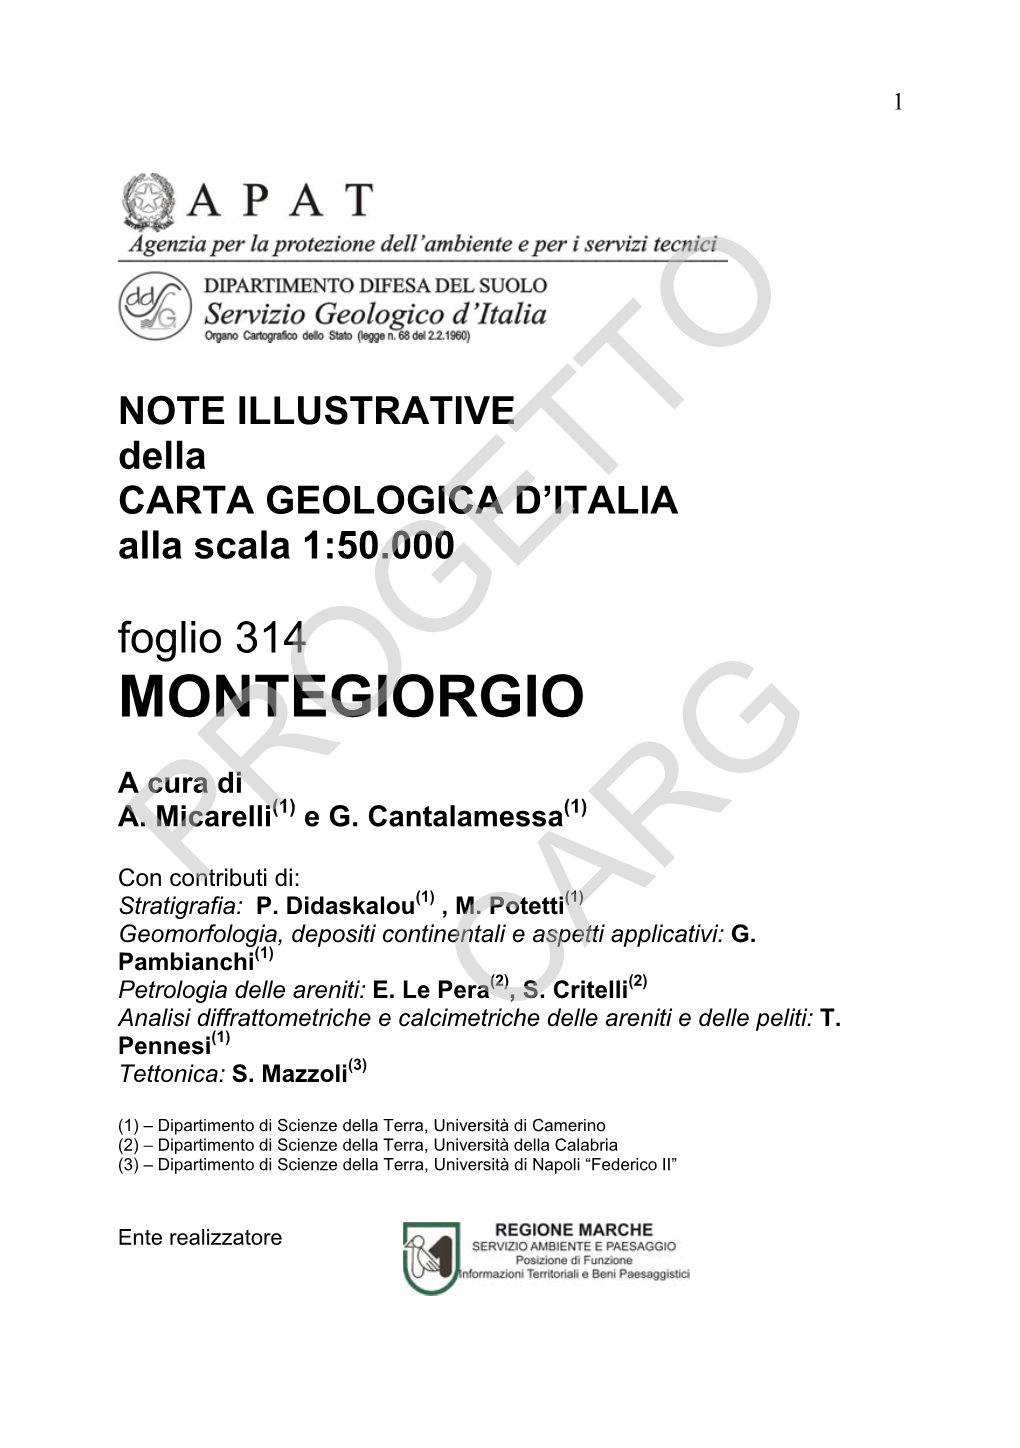 Progetto CARG Per Il Dipartimento Difesa Del Suolo – Servizio Geologico D’Italia: F